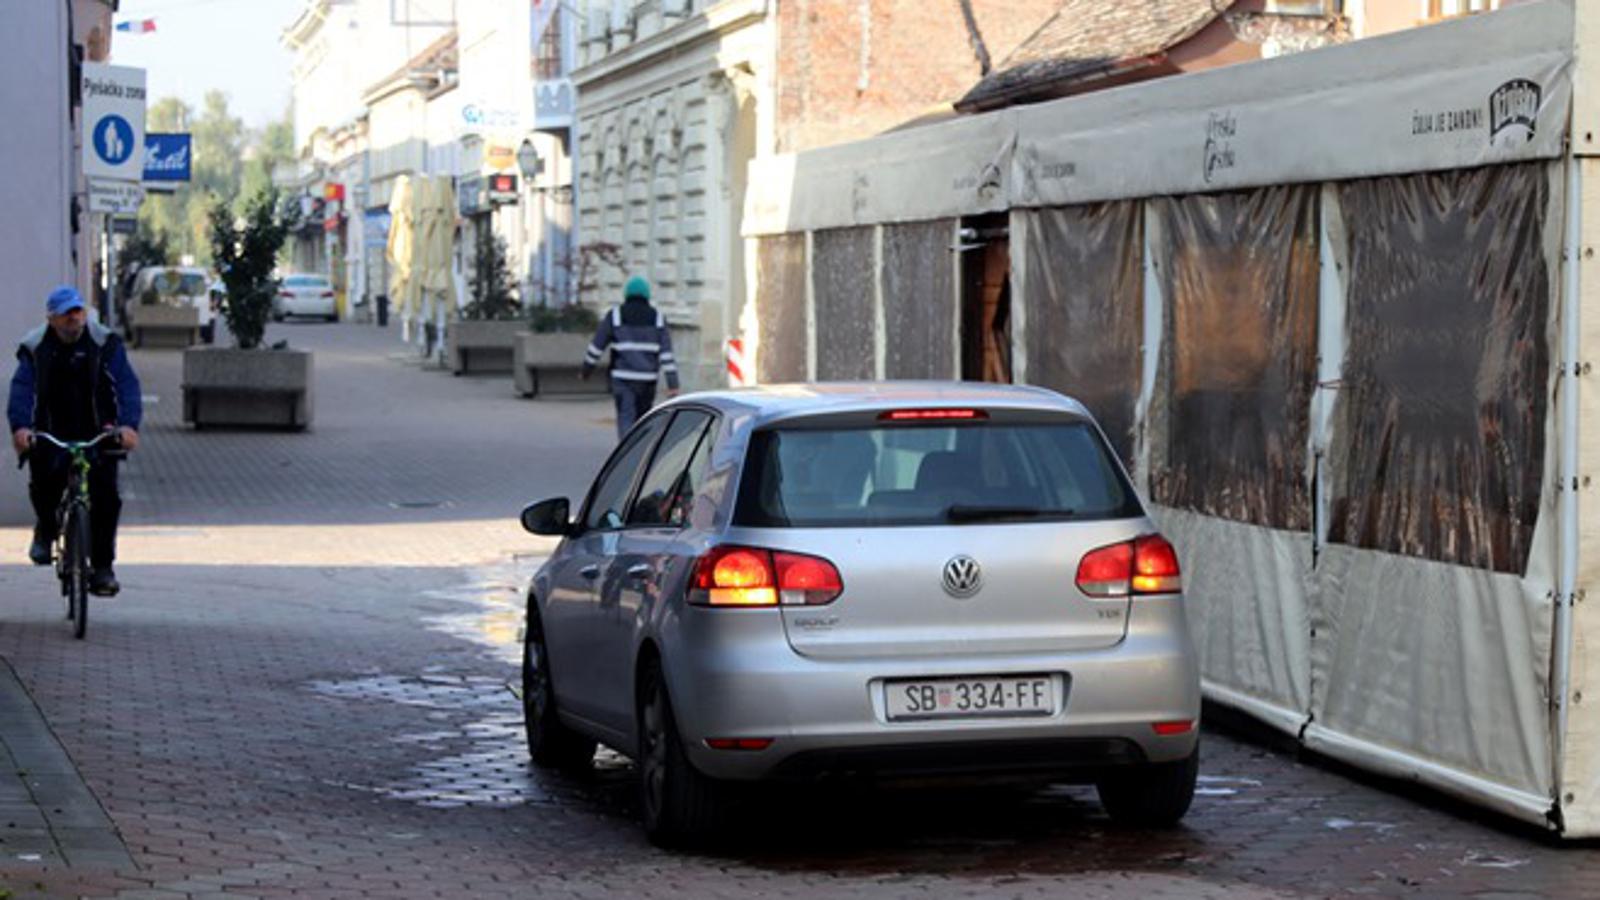 Starčevićeva ulica u Slavonskom Brodu - pješačka zona